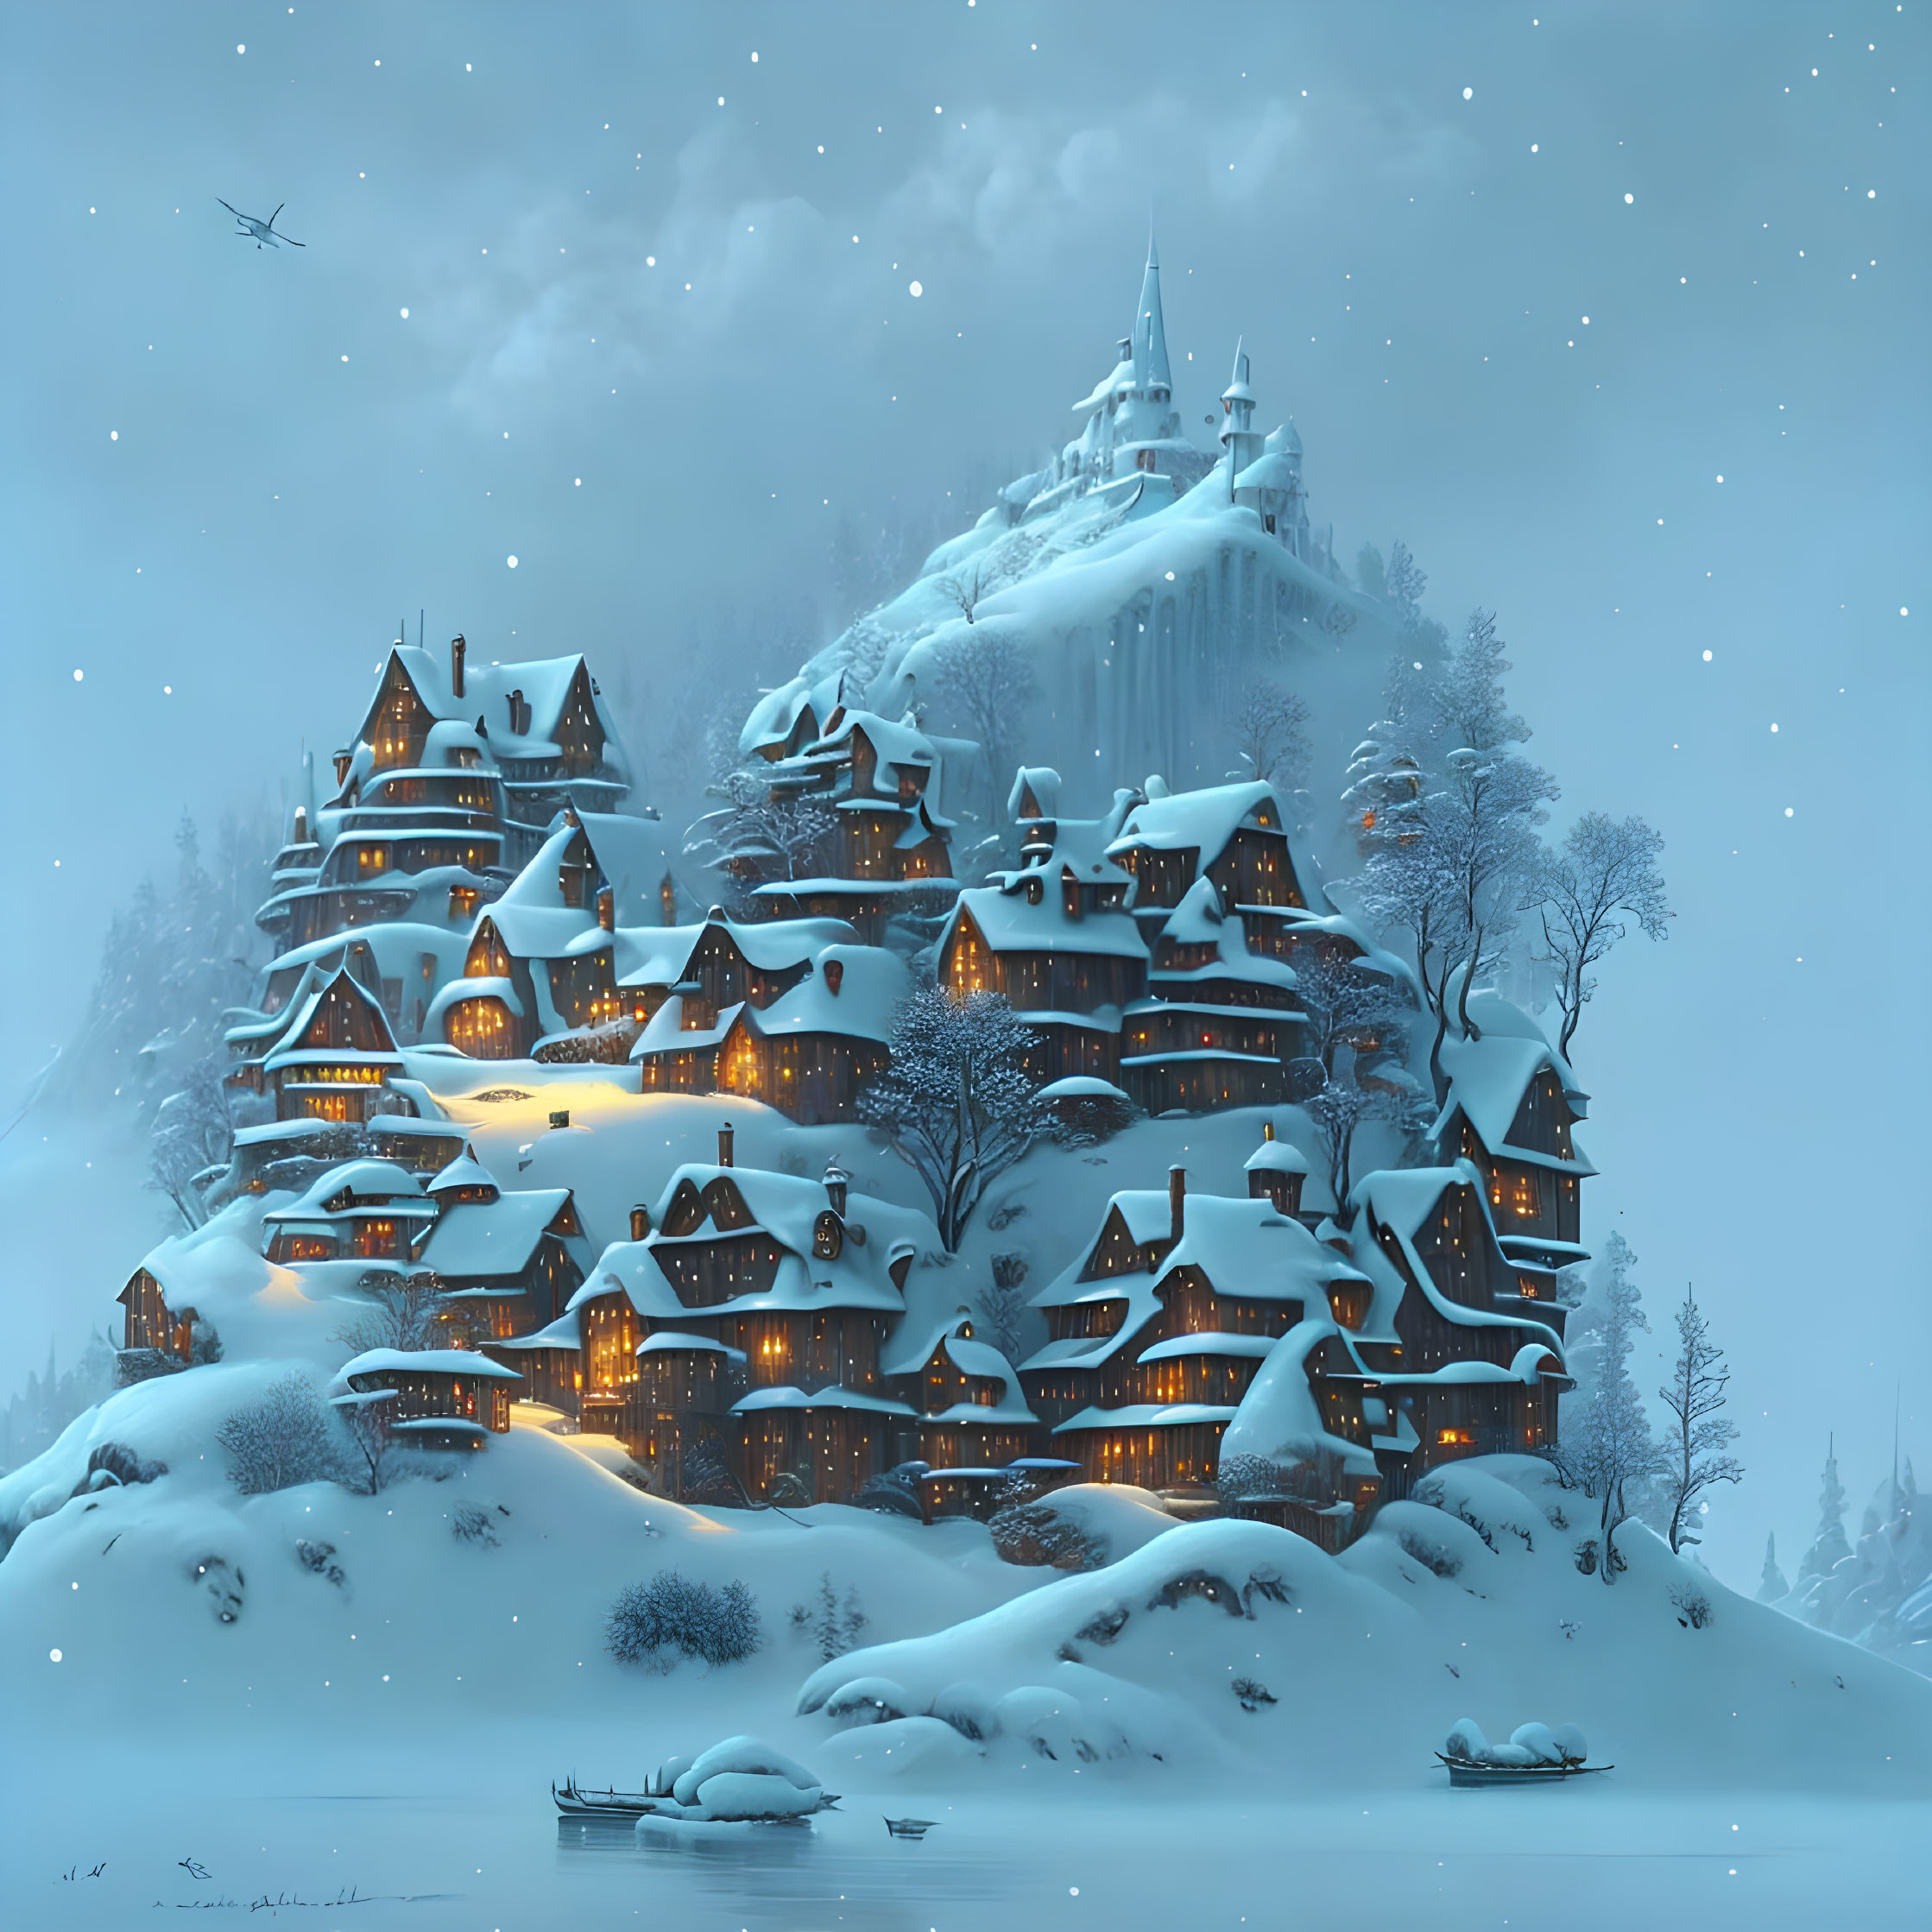 Twilight Glow: Snowy Village & Castle